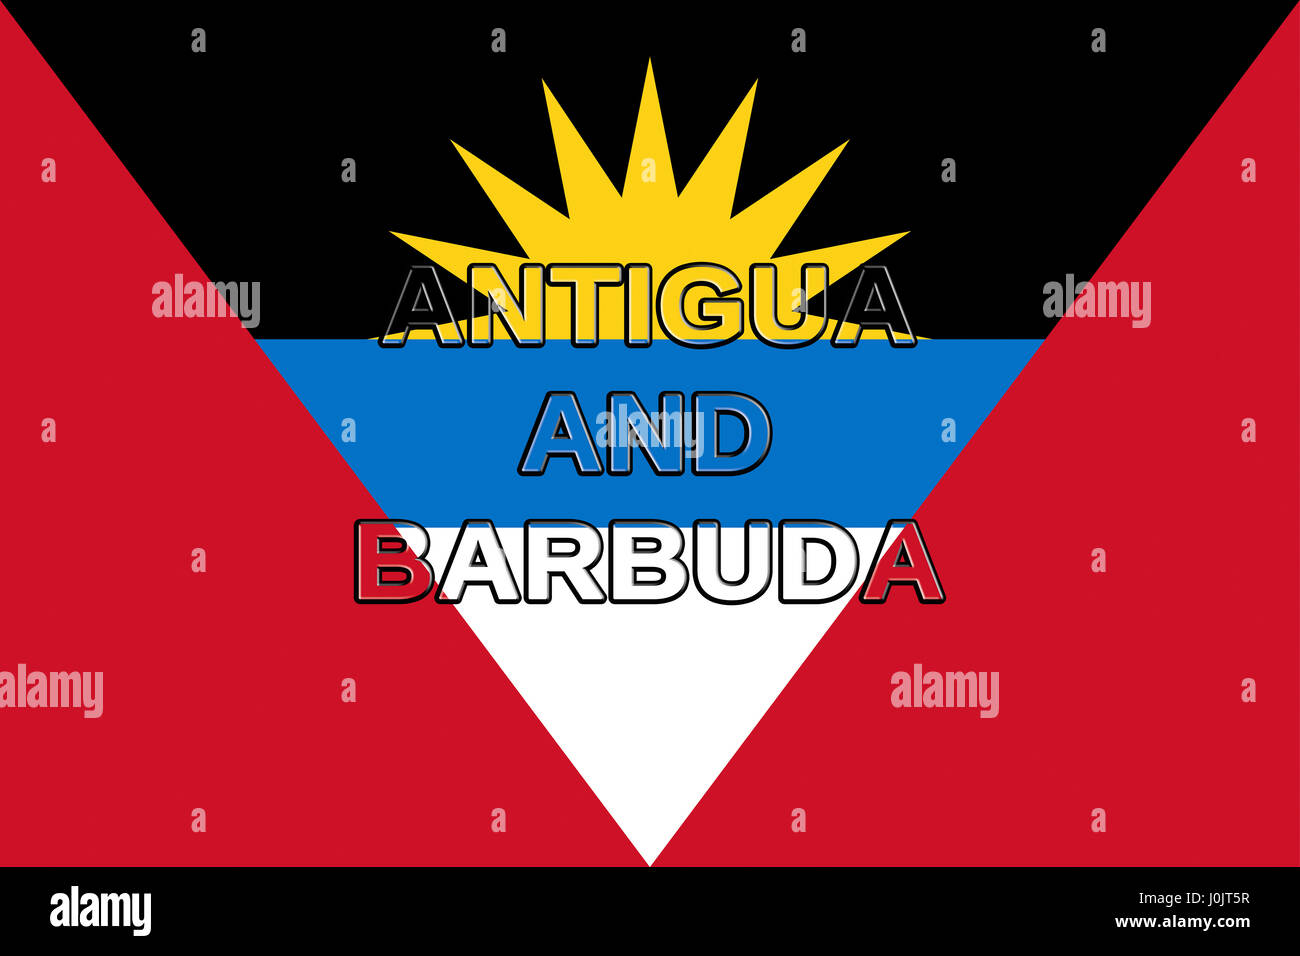 Abbildung der Flagge von Antigua und Barbuda mit dem Land auf die Fahne geschrieben Stockfoto